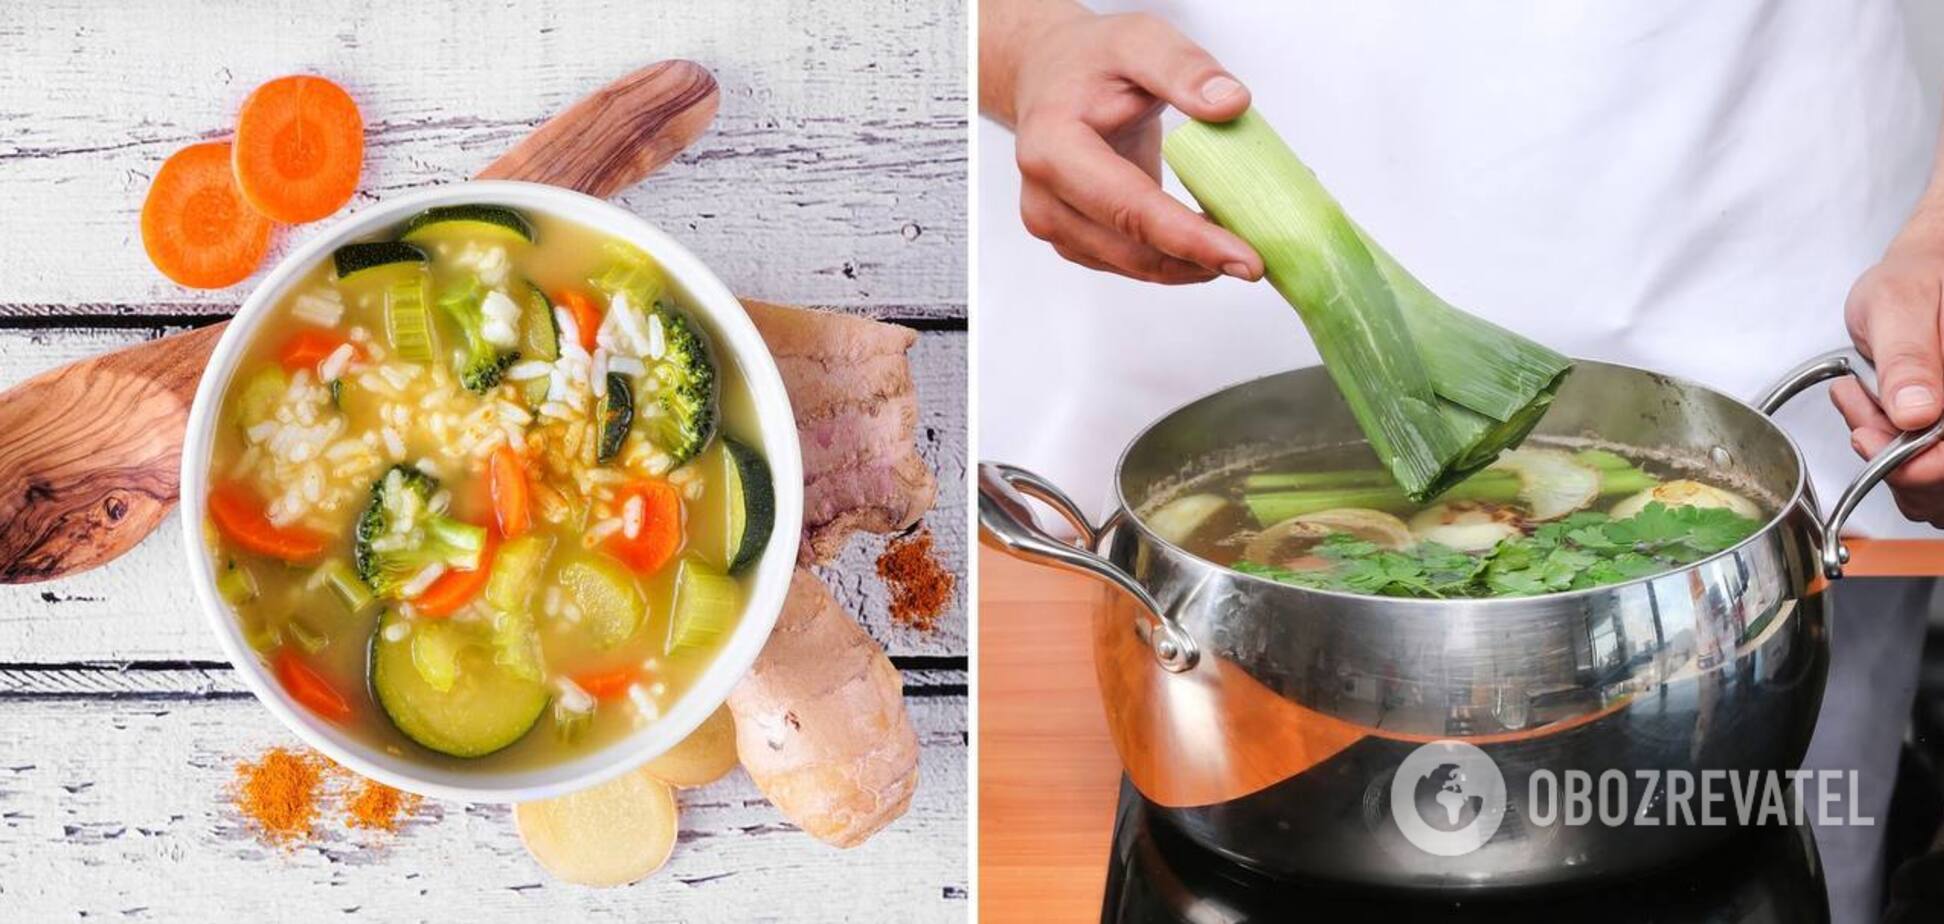 Як правильно варити суп, щоб він залишався прозорим: простий лайфхак